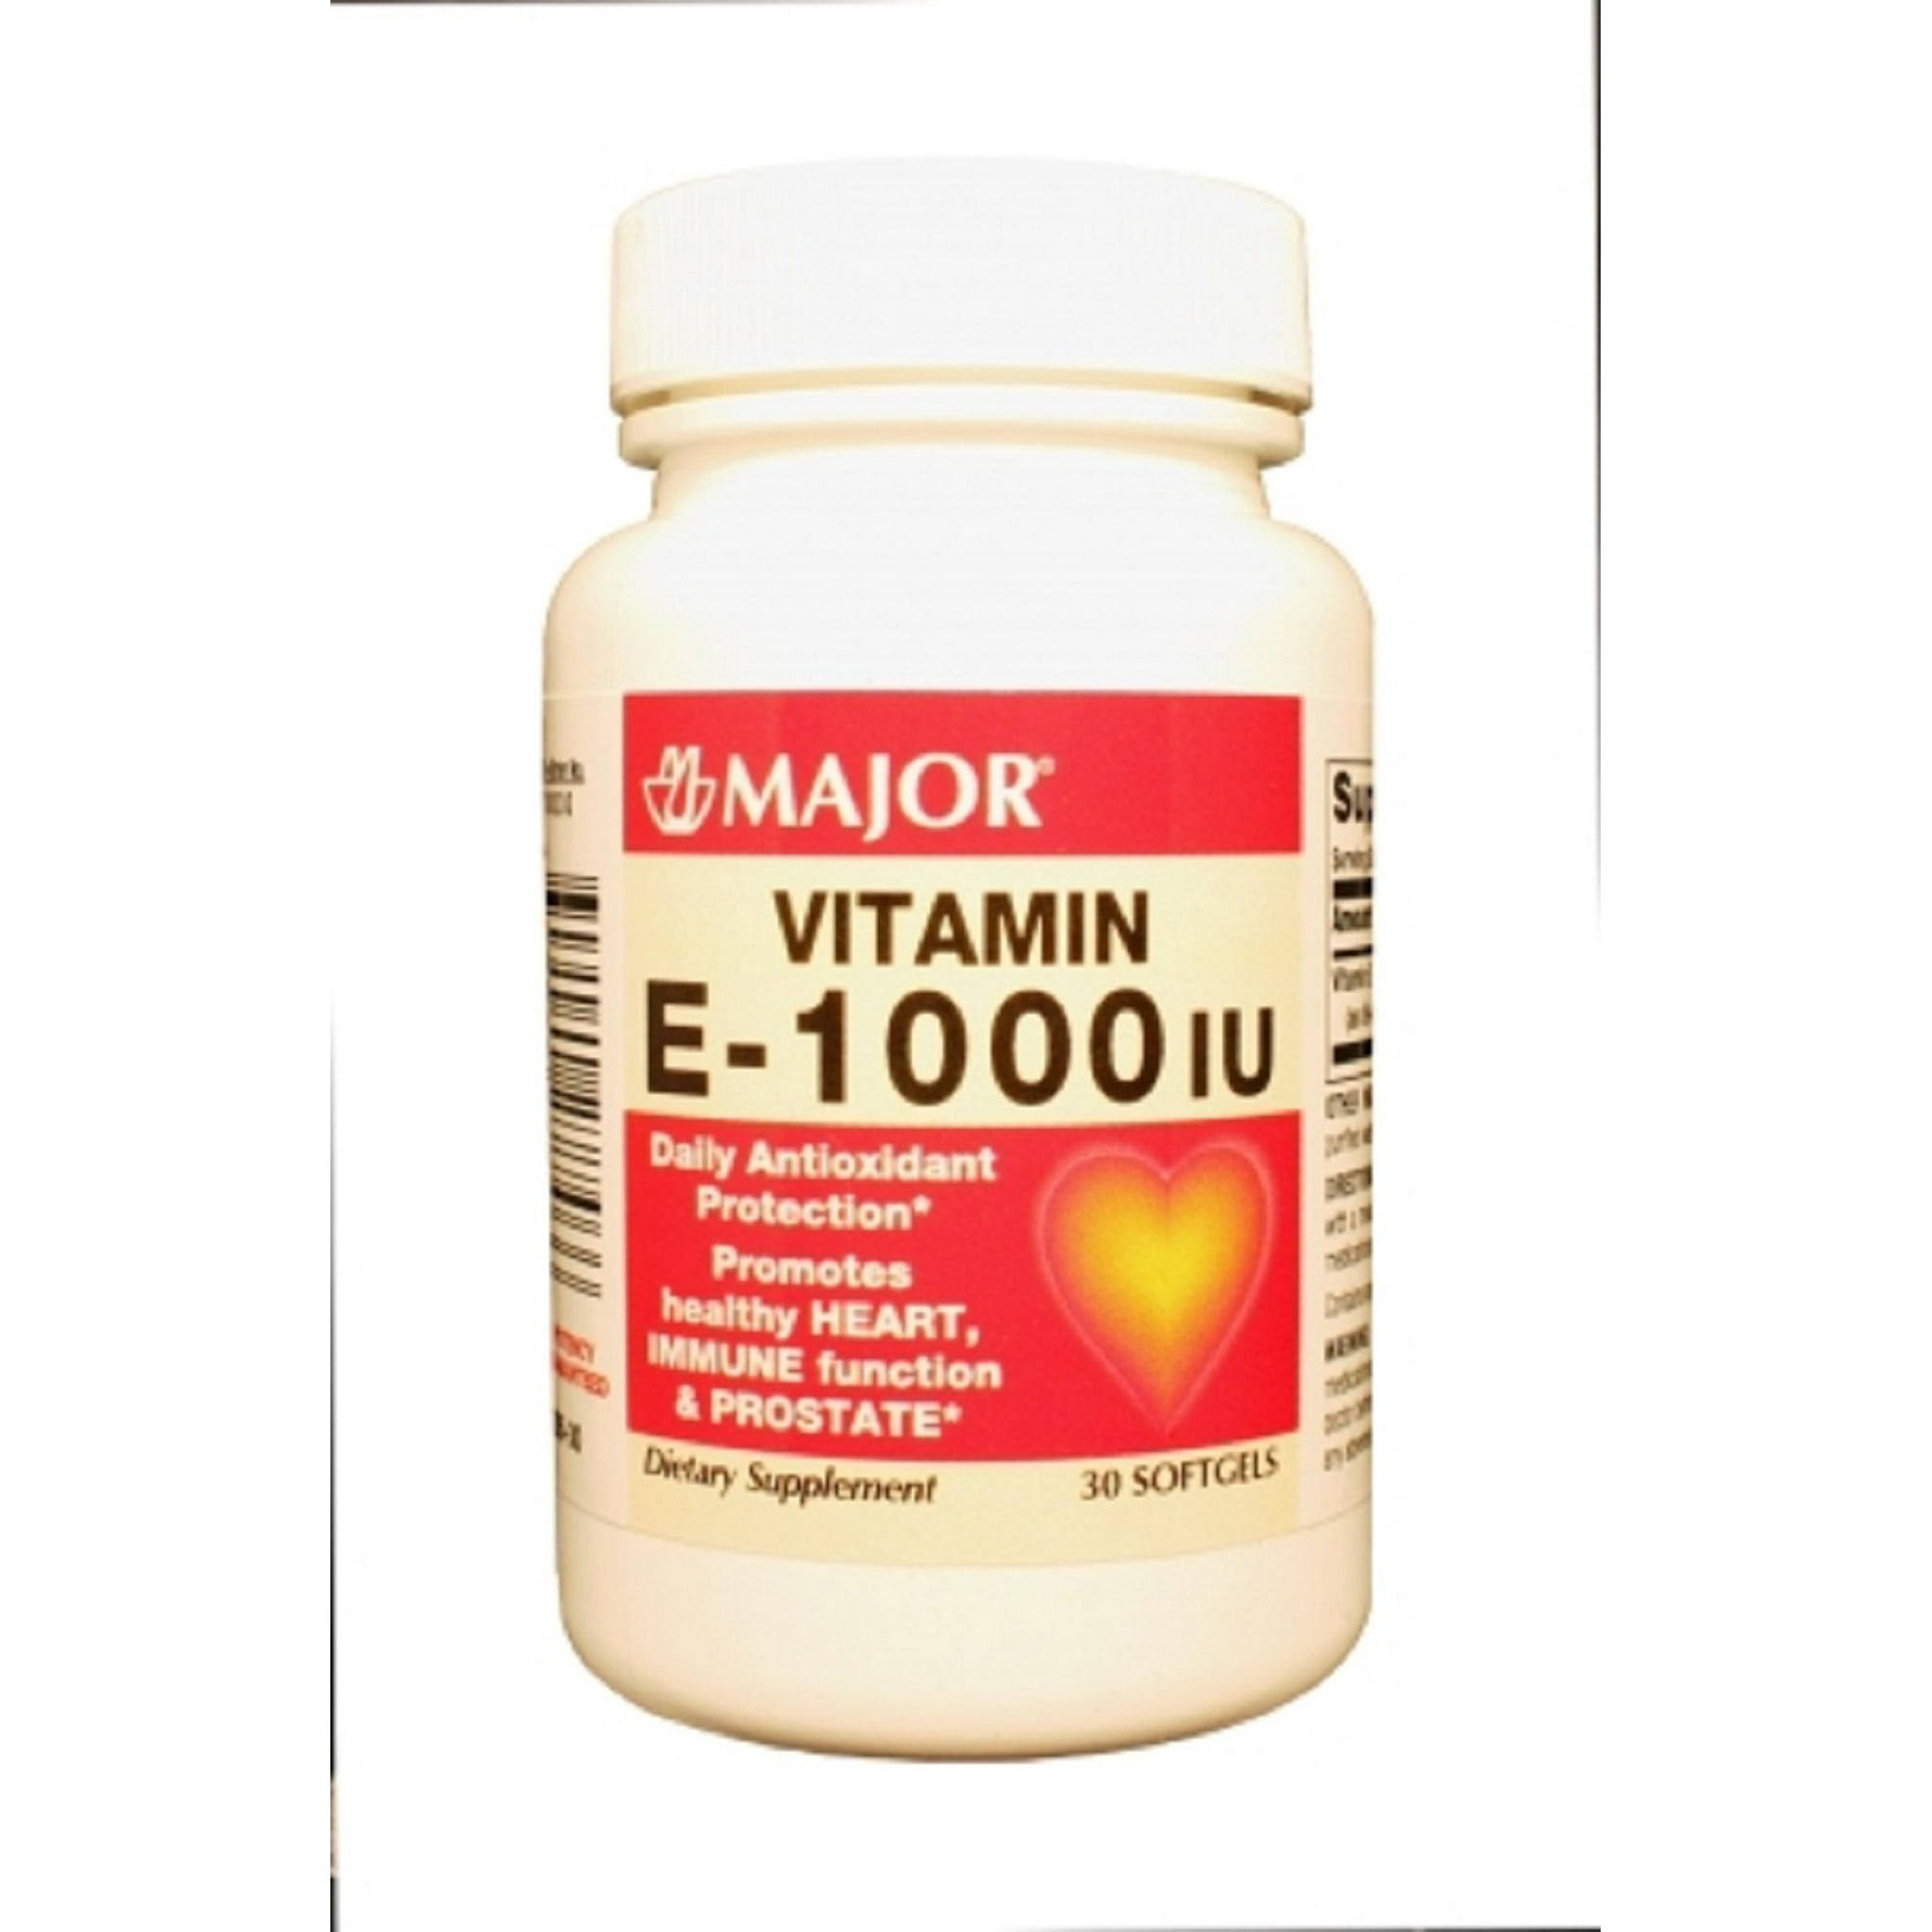 Major Vitamin E-1000 Iu - 30 Softgels